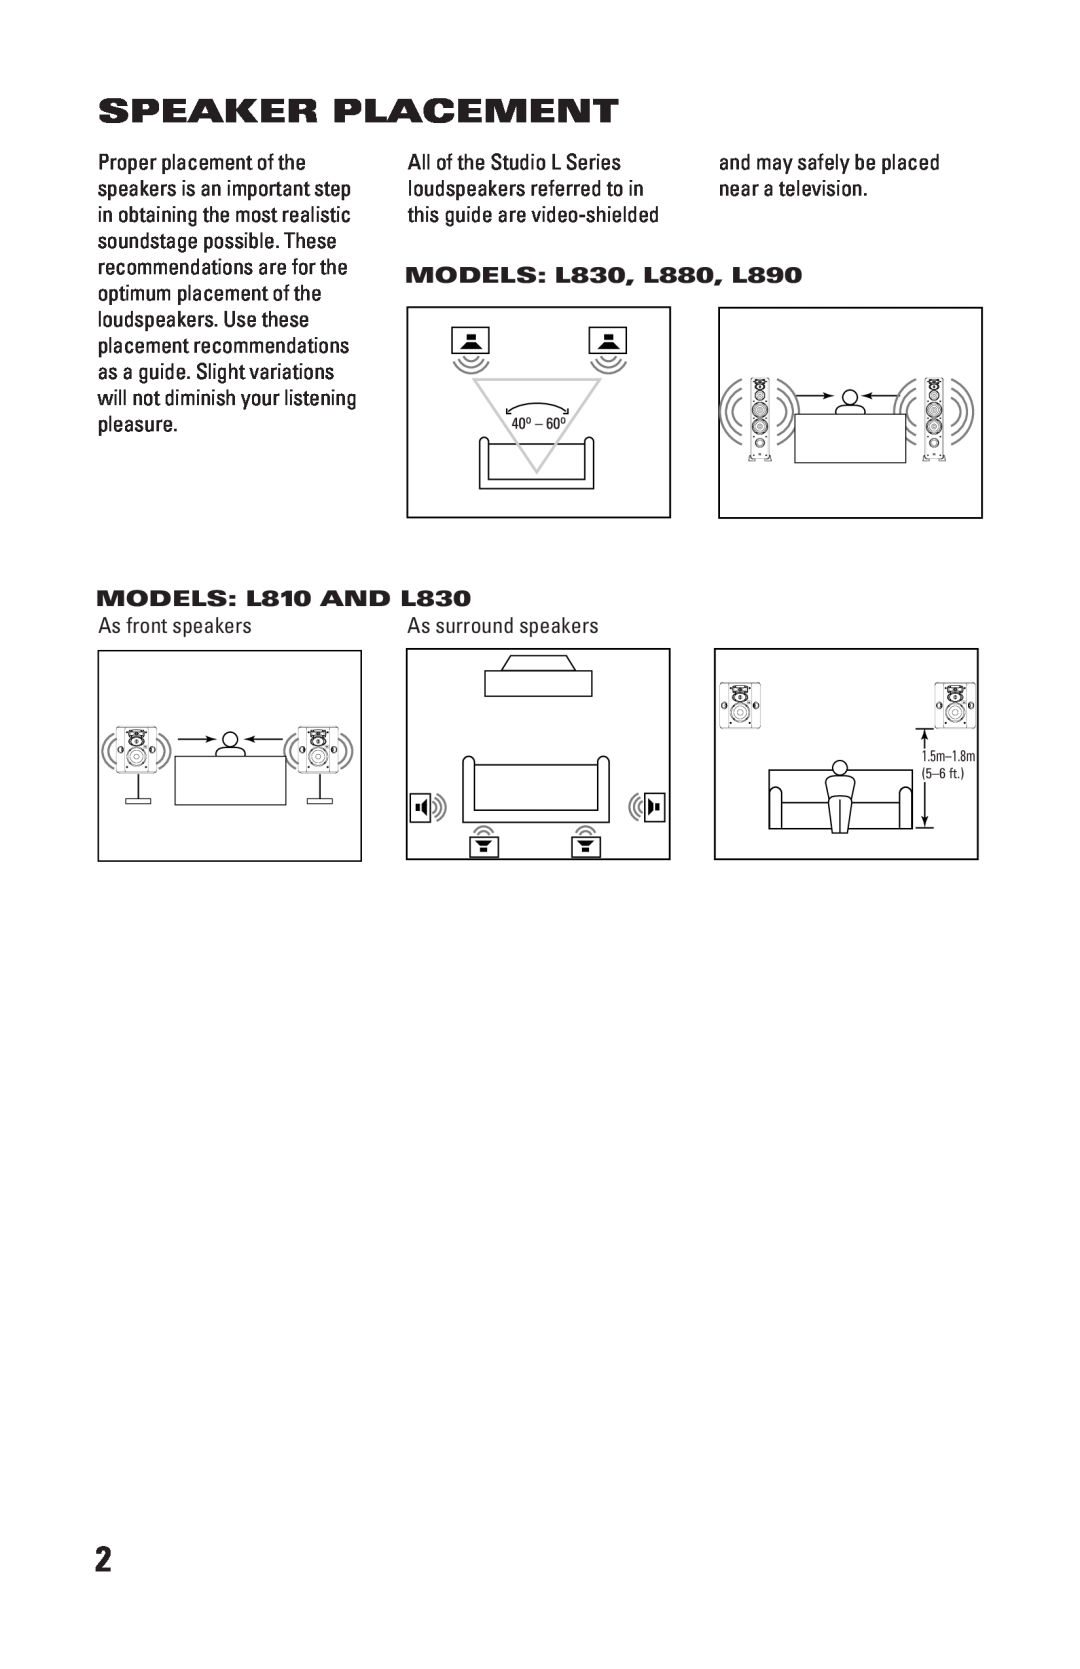 JBL LC1 manual Speaker Placement, MODELS L830, L880, L890, MODELS L810 AND L830 